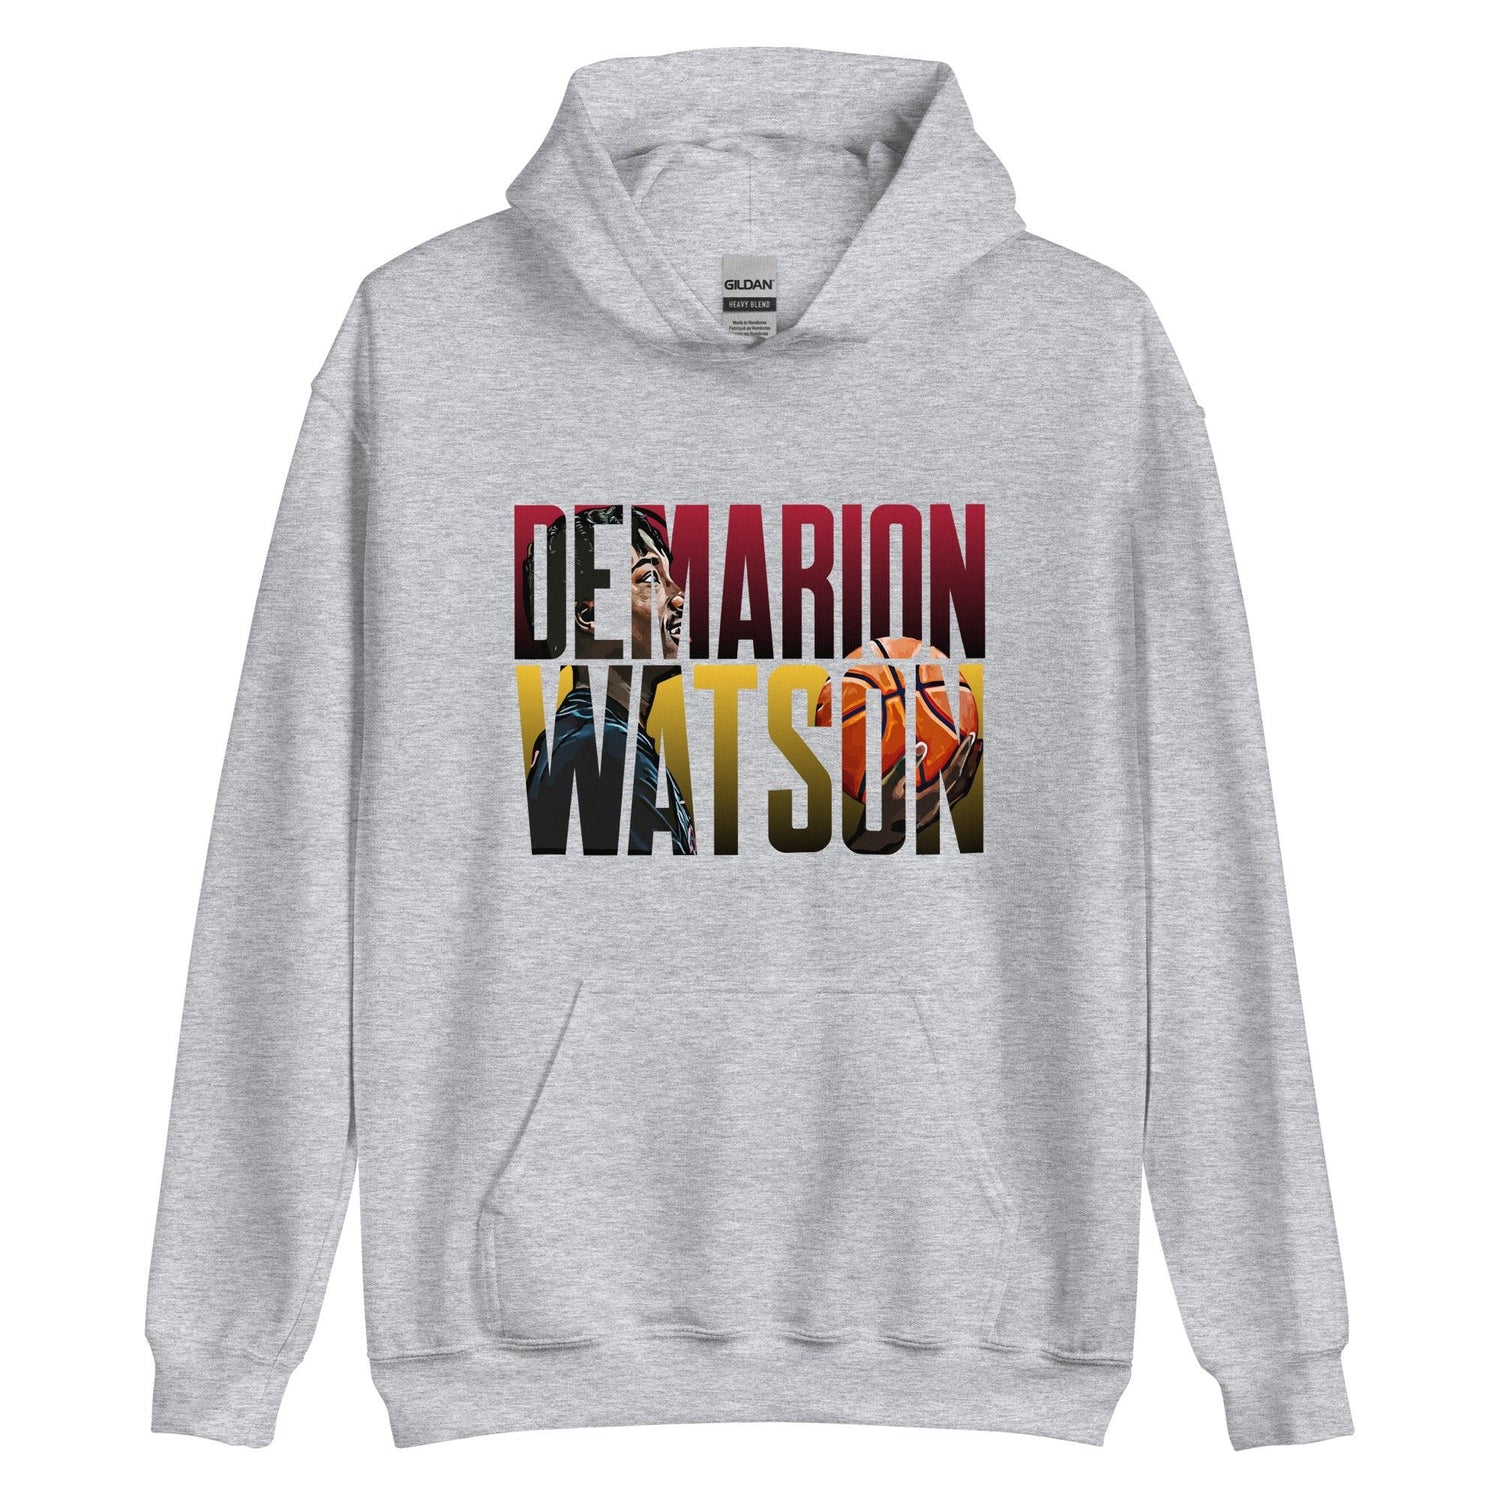 Demarion Watson "Future Star" Hoodie - Fan Arch